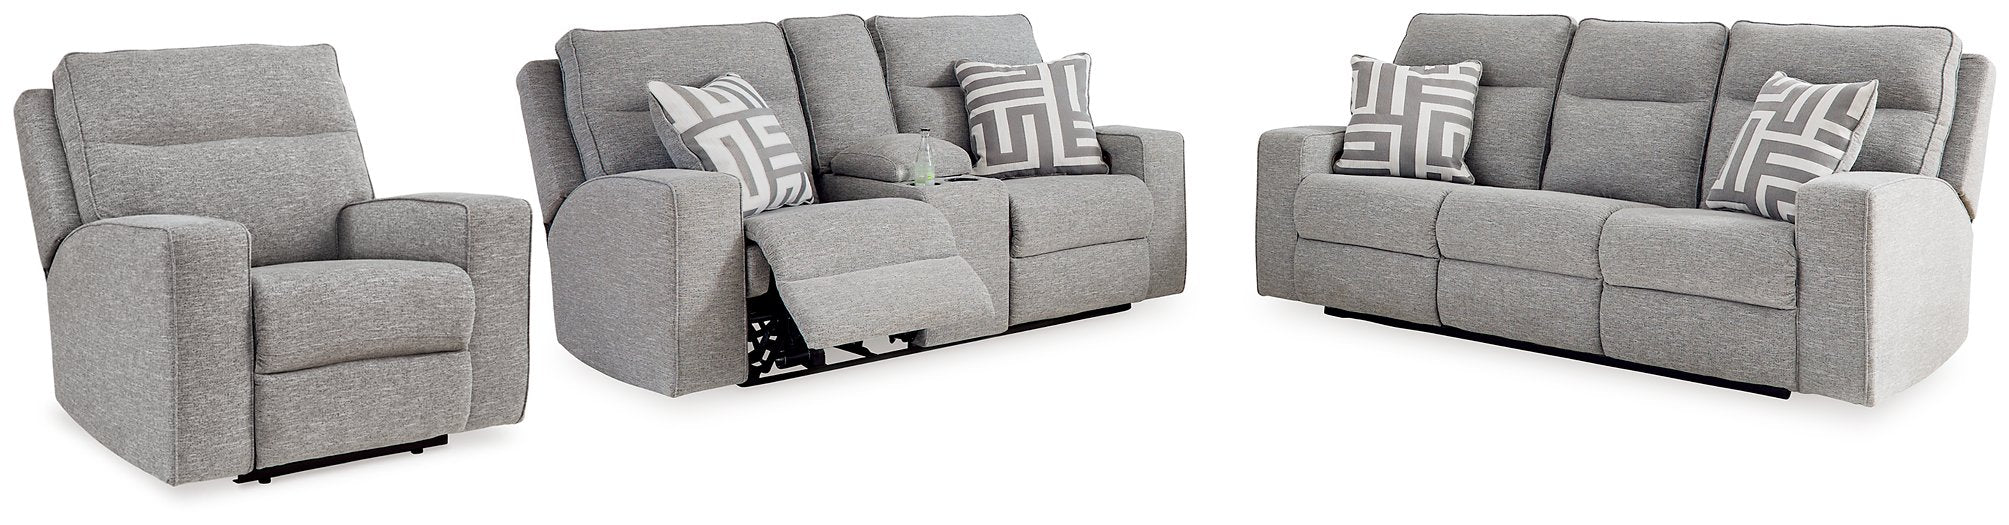 Biscoe Living Room Set - Evans Furniture (CO)